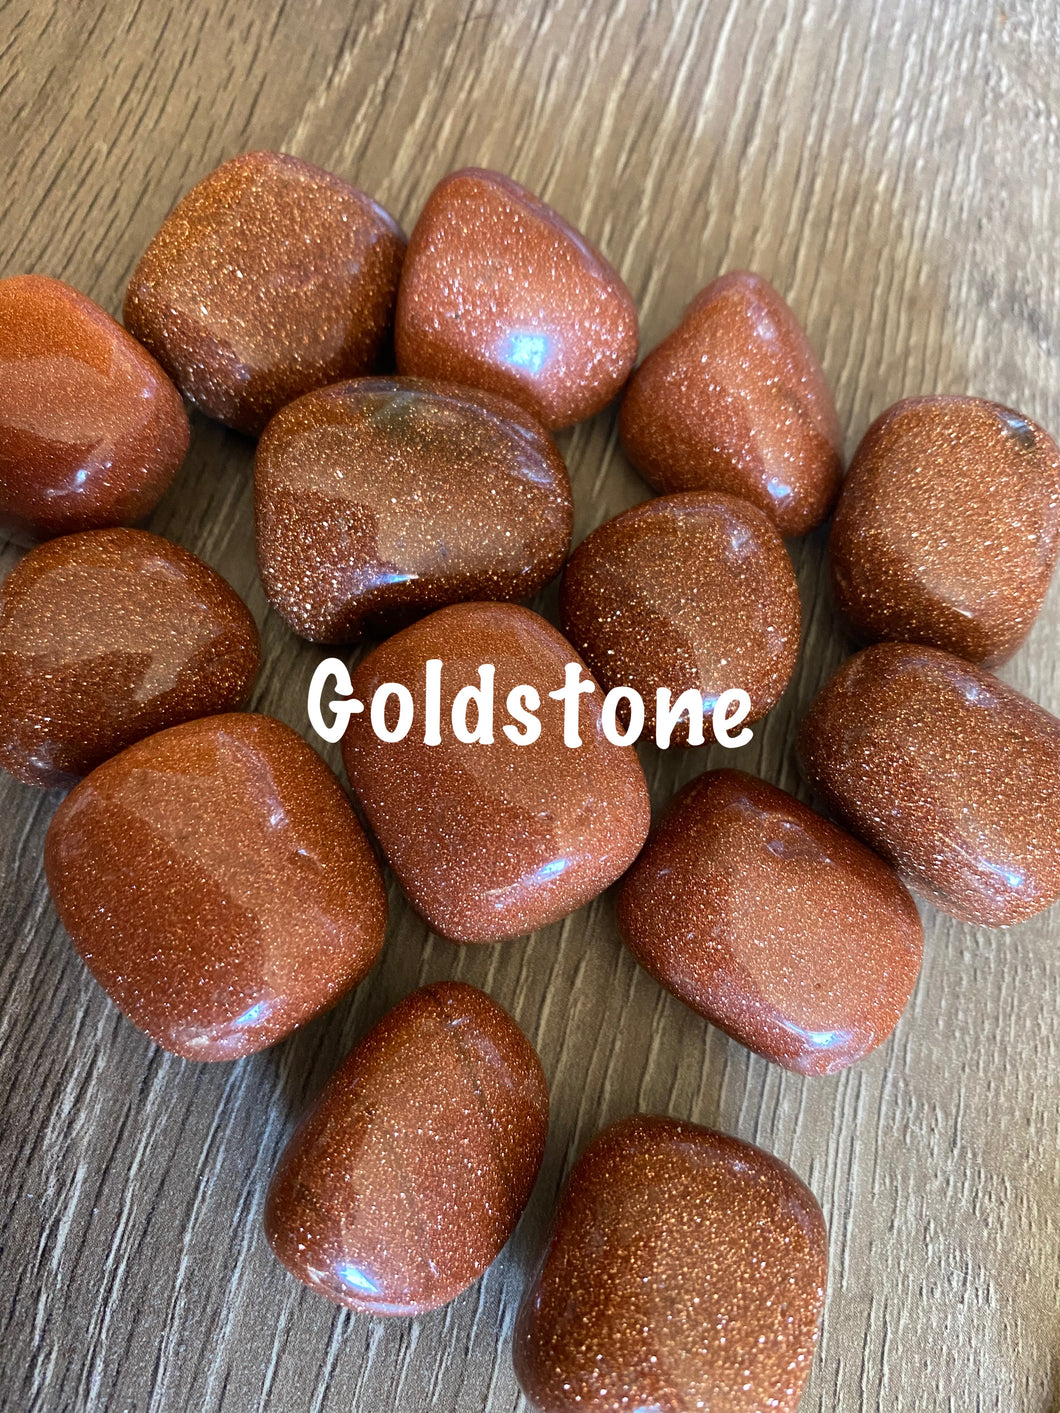 Goldstone tumble